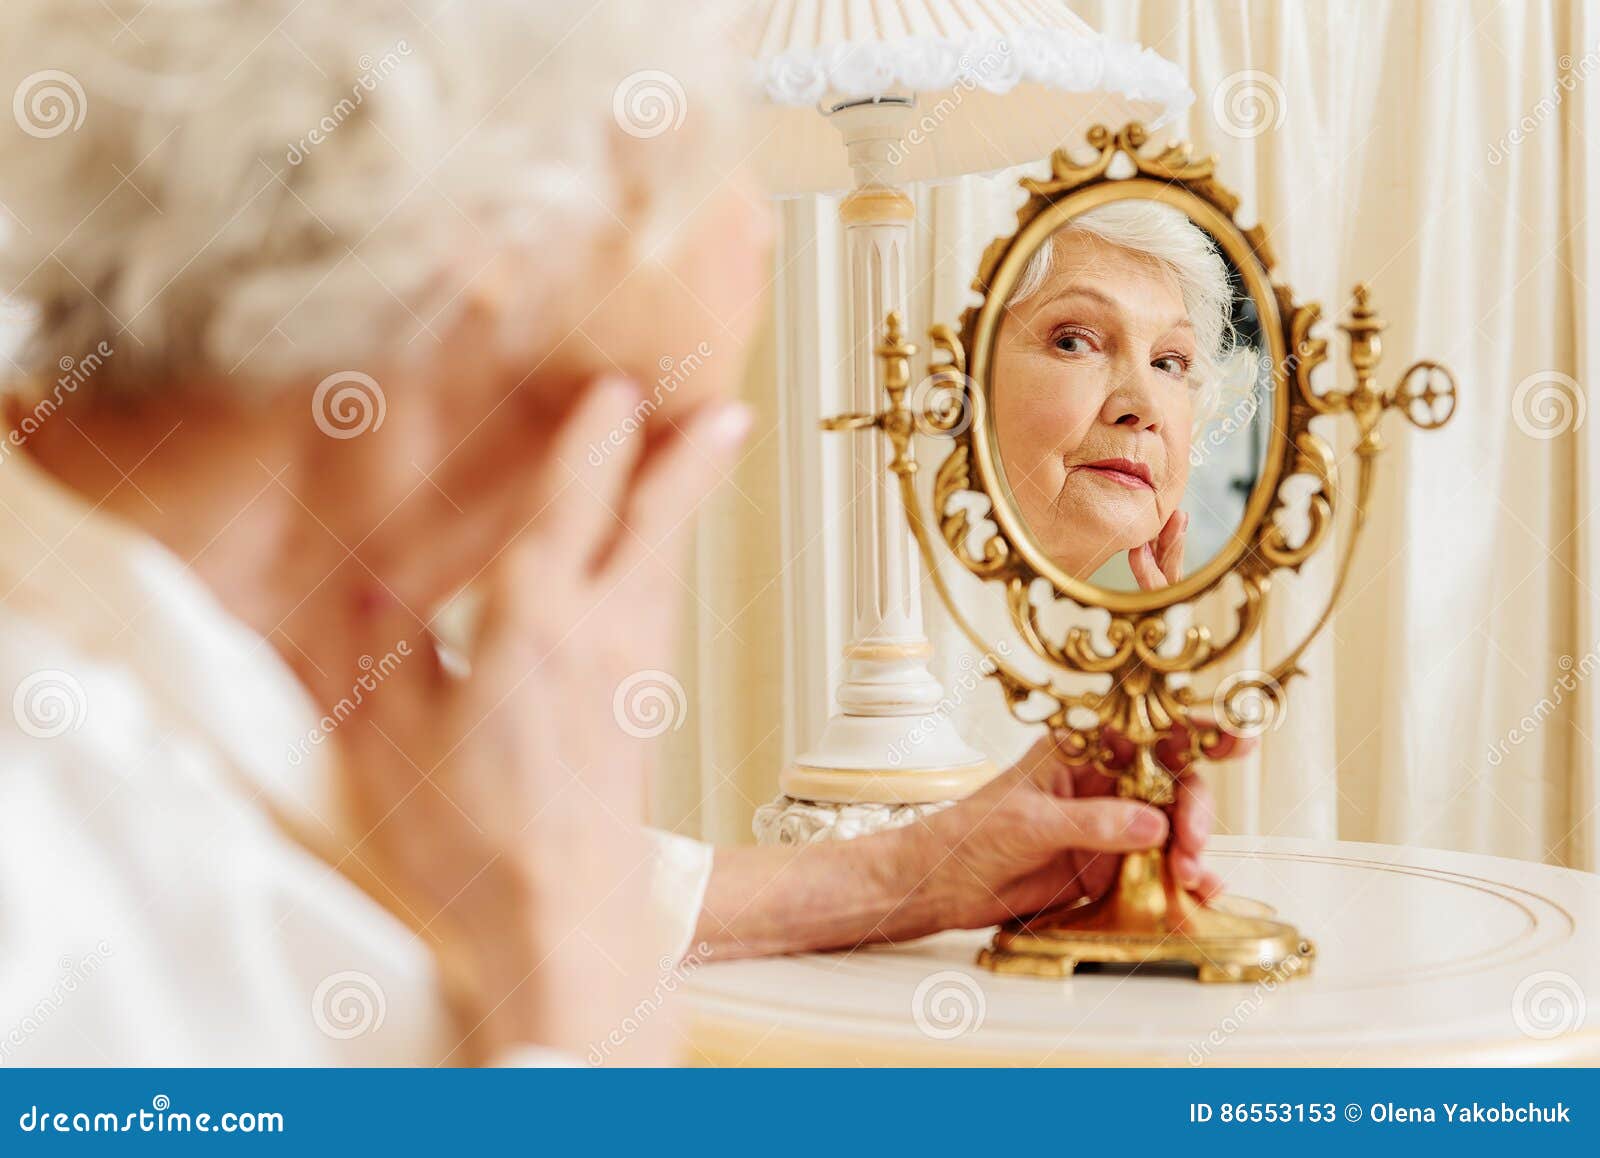 Женщина в зеркале роли. Старость в зеркале. Отражение в зеркальце счастливой женщины. Зеркало картинка. Хорошая самооценка.